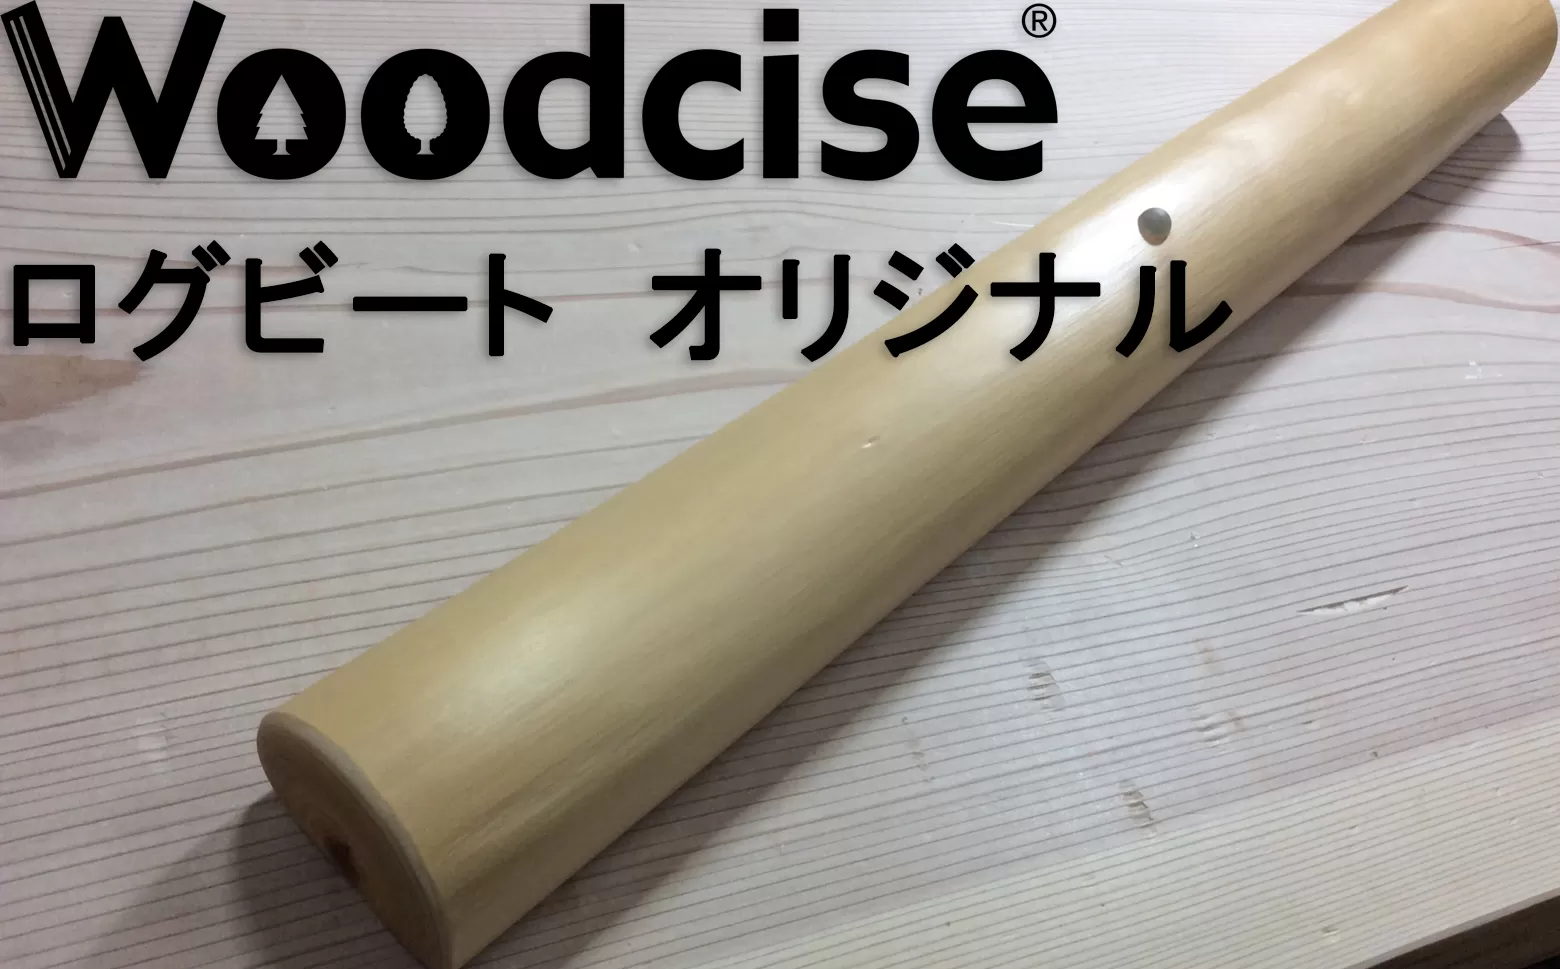 M-ED1.【ウッドサイズ健康法】Woodcise　ログビートオリジナル